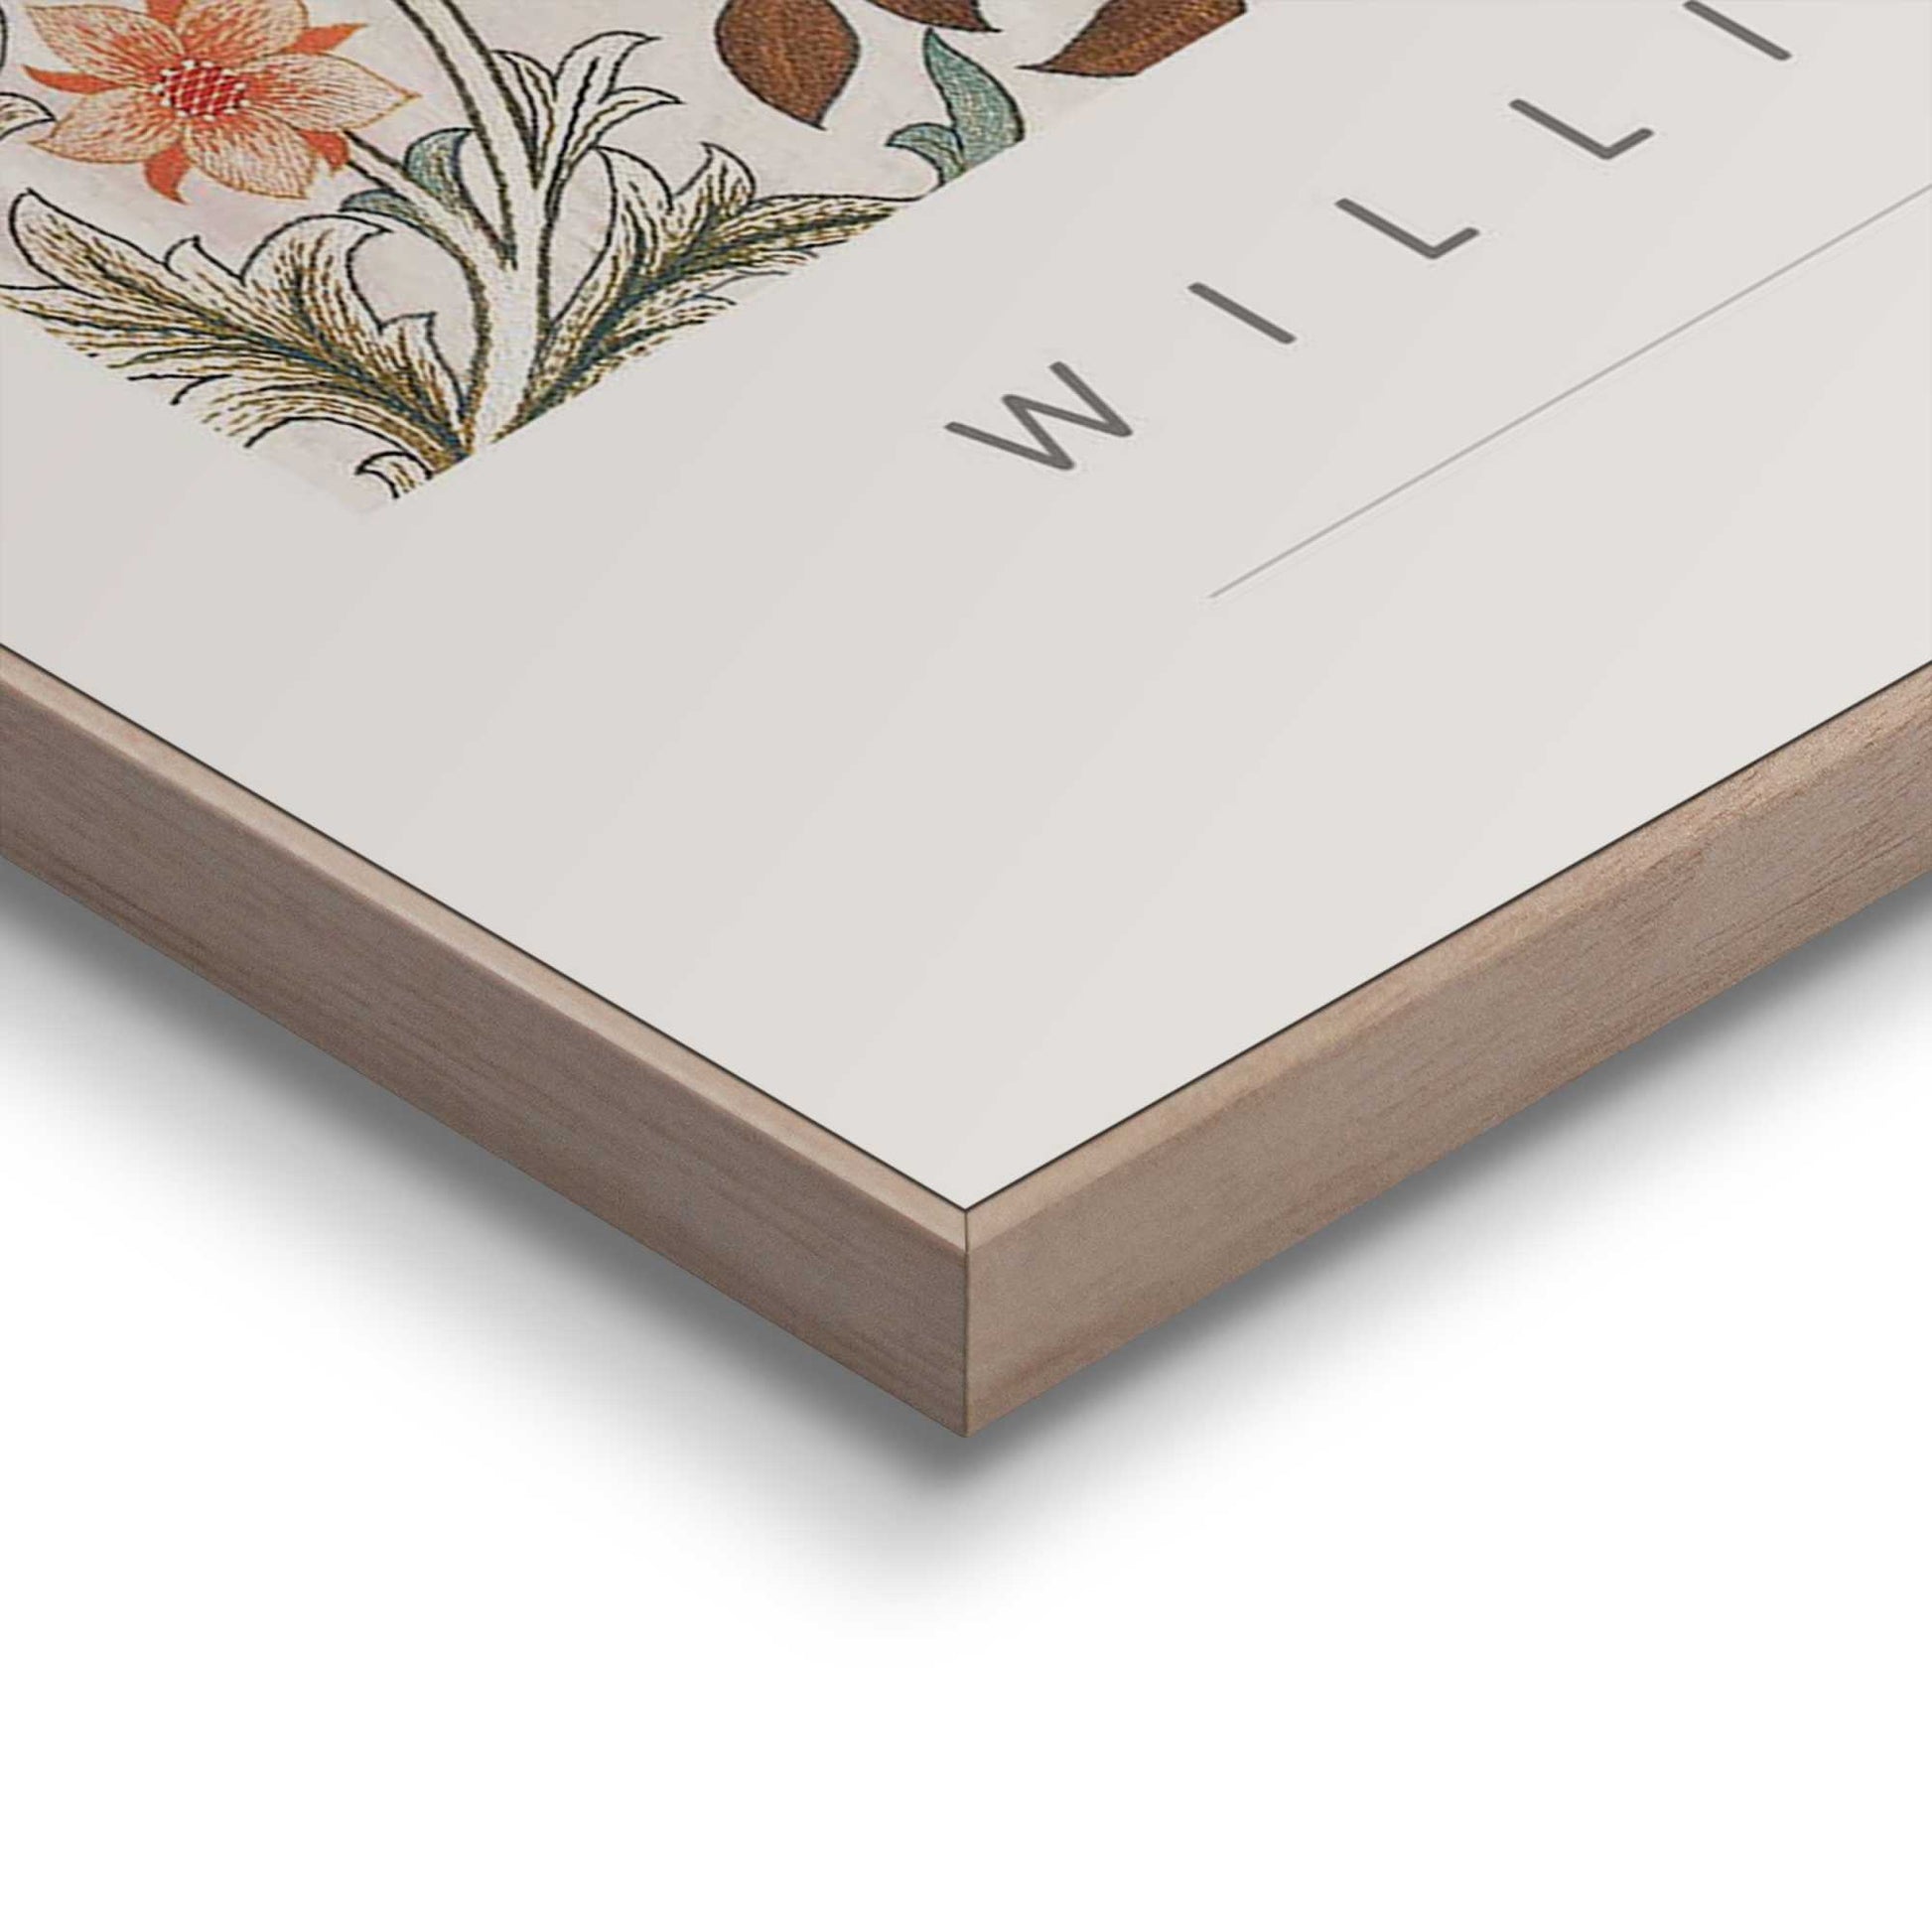 Orangewallz William Morris - acanthus portiere